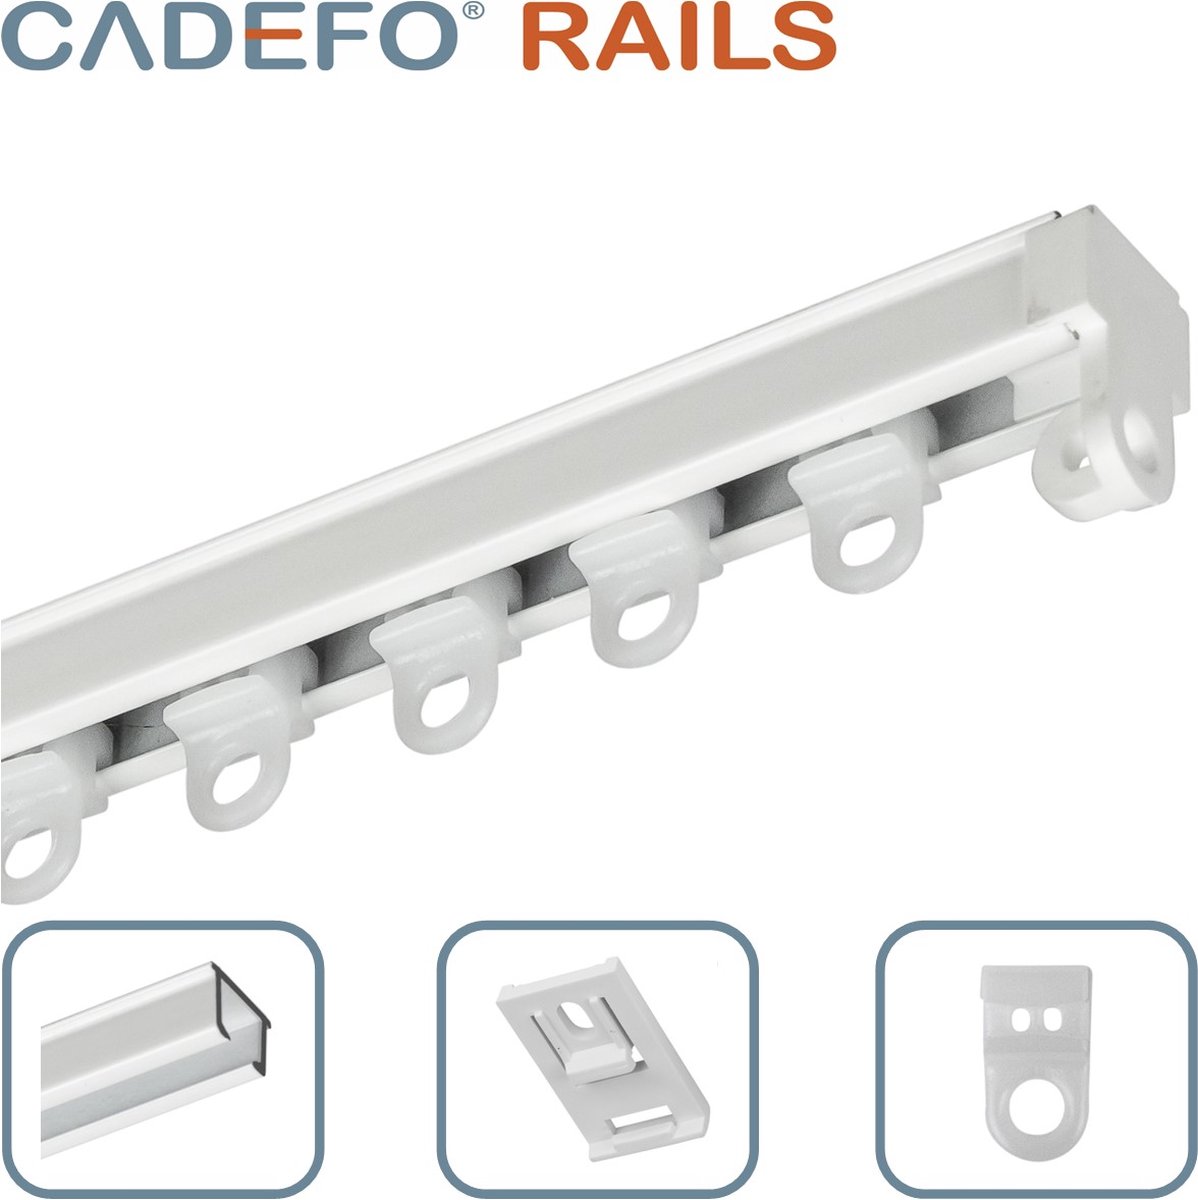 CADEFO RAILS (351 - 400 cm) Gordijnrails - Compleet op maat! - UIT 1 STUK - Leverbaar tot 6 meter - Plafondbevestiging - Lengte 378 cm